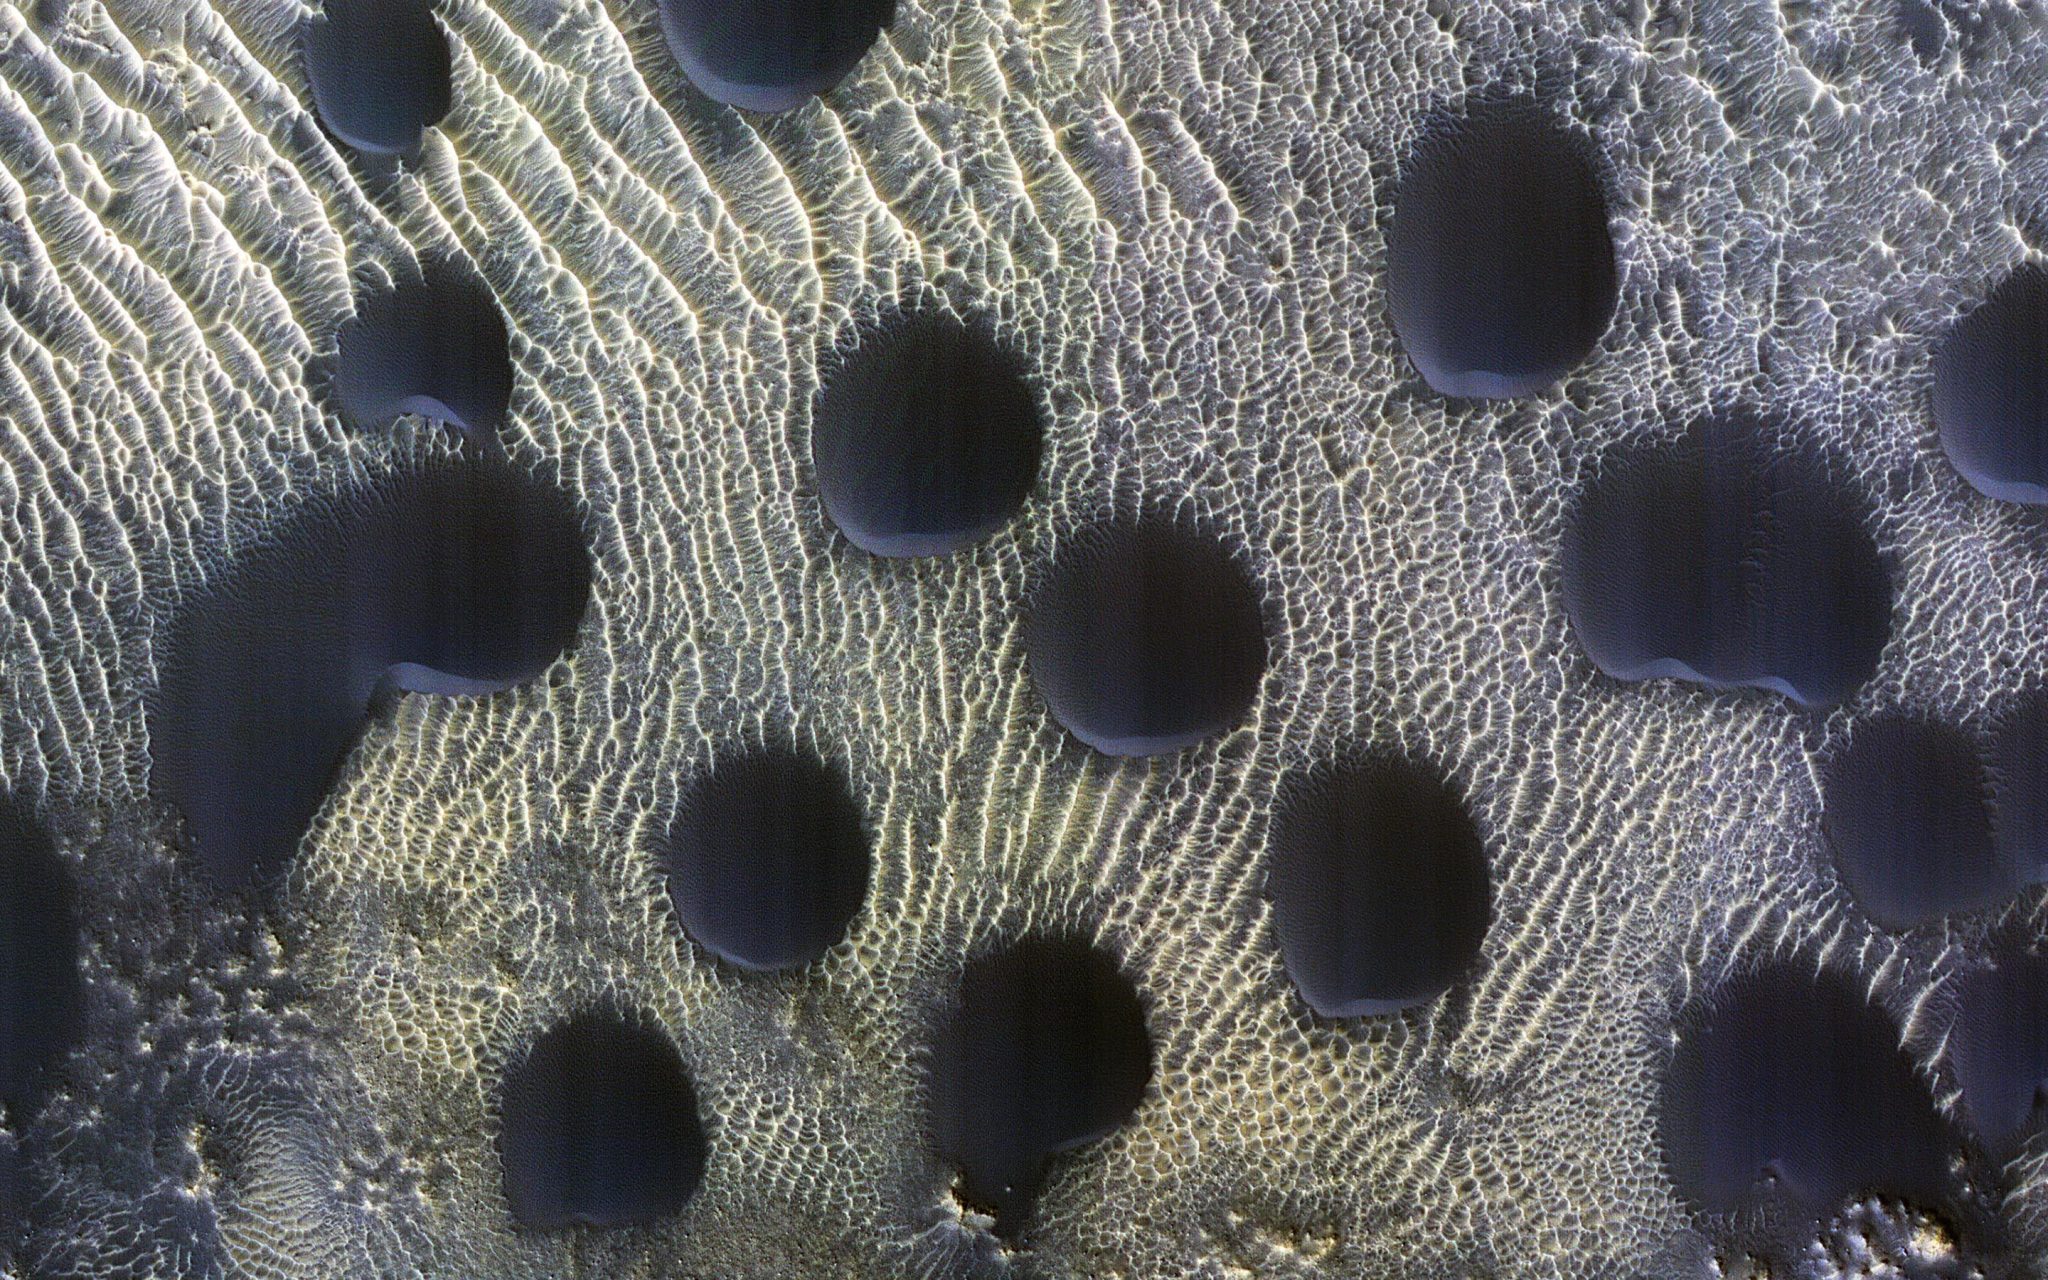 Extrañas dunas de arena redondas descubiertas por la nave espacial de la NASA en Marte